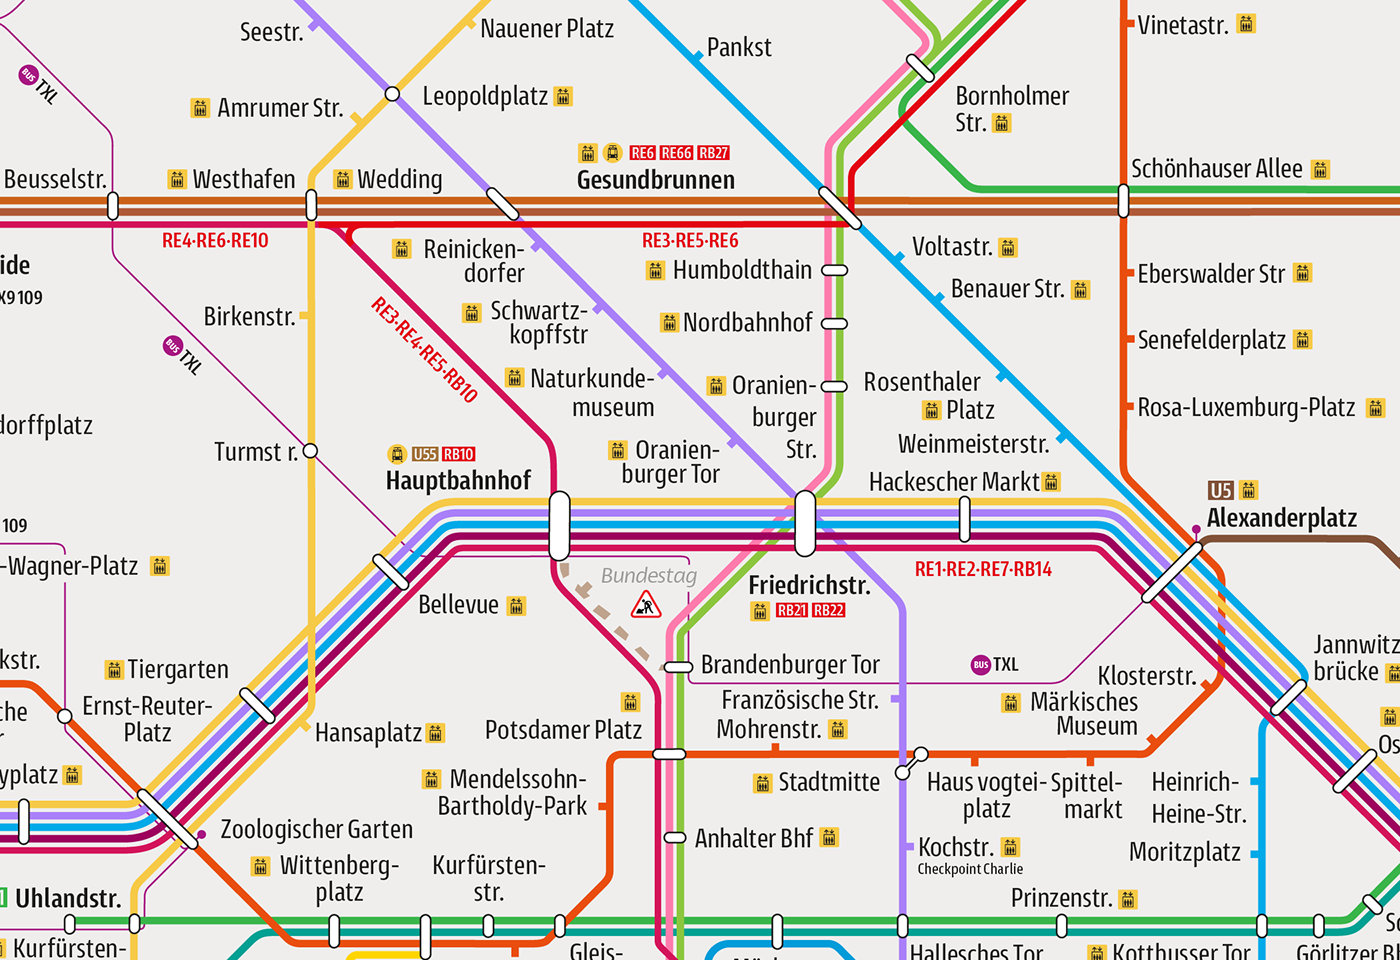 Mockup of  Berlin's metro map